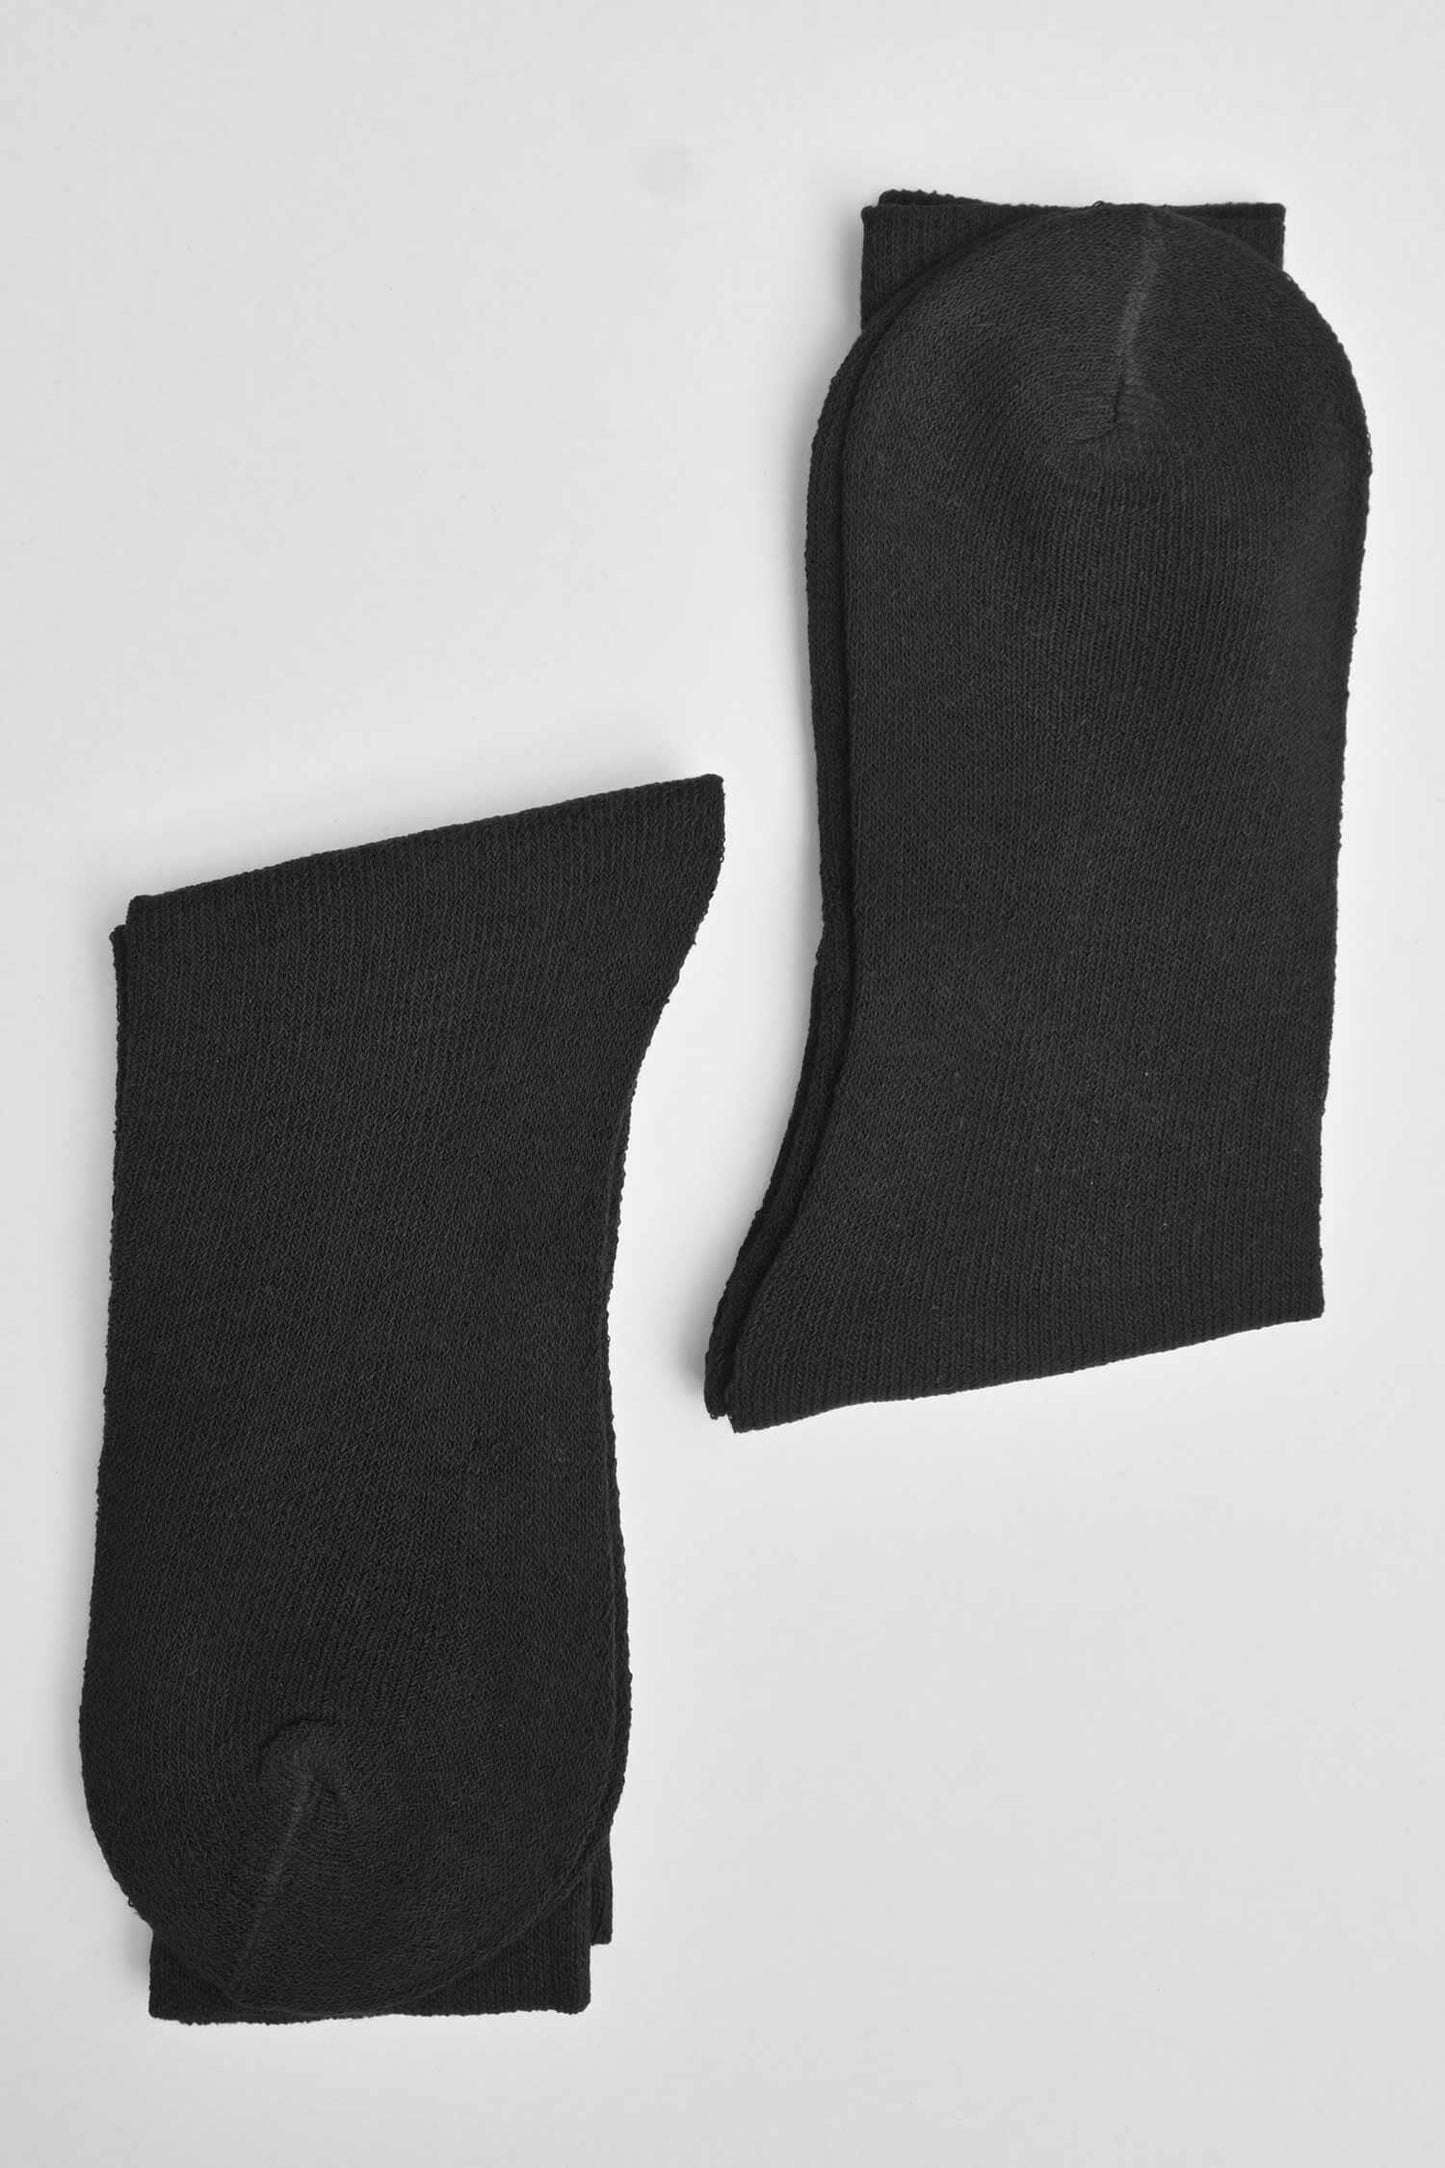 Men's Brussels Crew Socks - Pack Of 2 Pairs